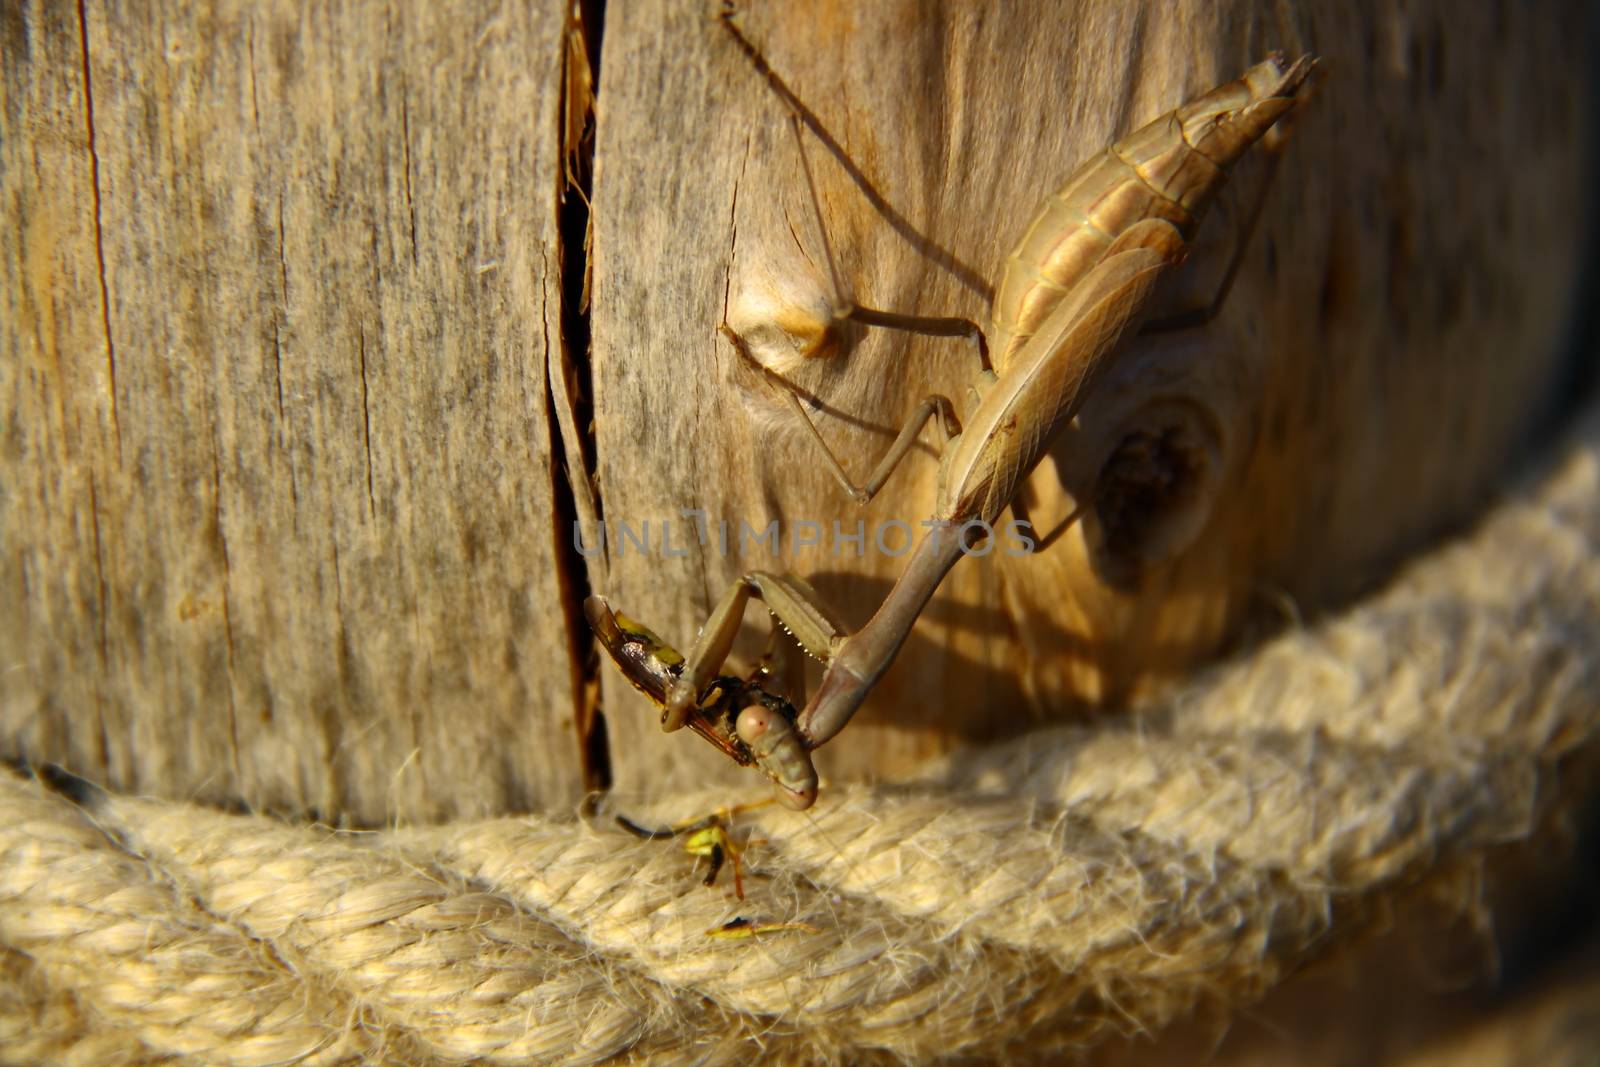 praying mantis eating a bee near rope